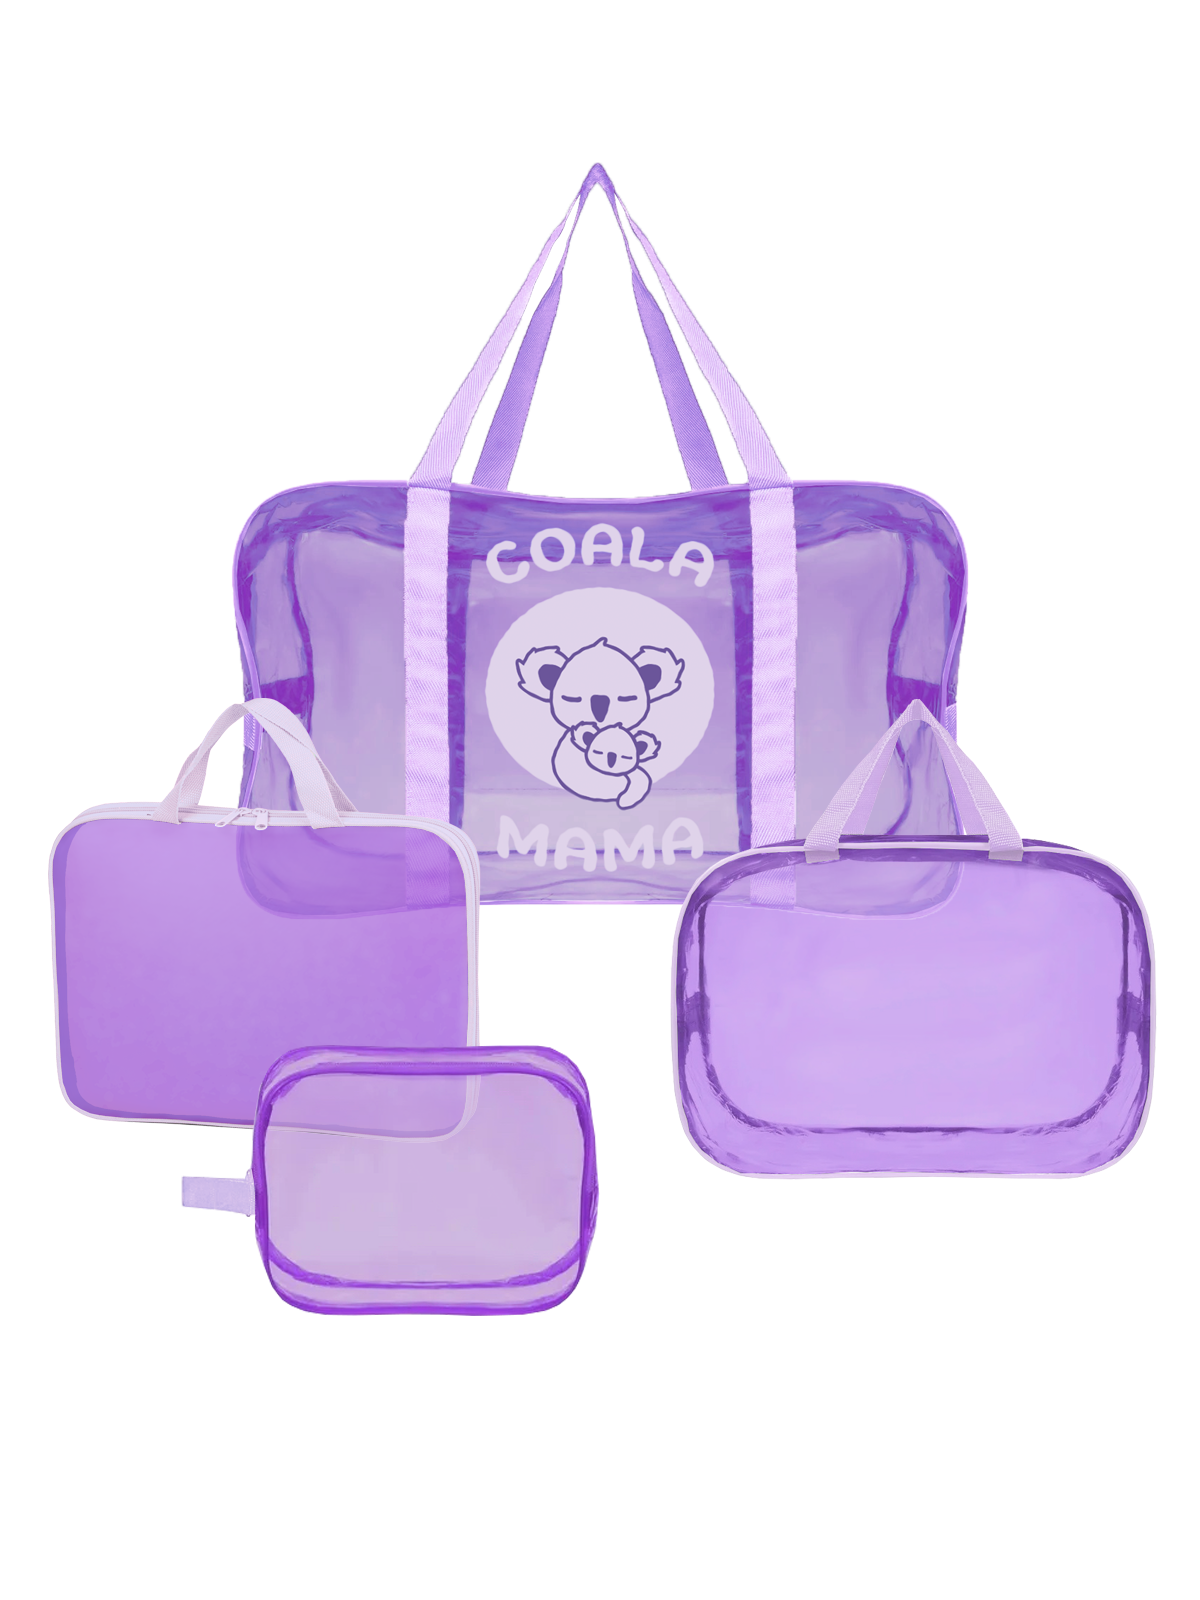 Набор сумок в роддом Coala Mama, Dark Violet, 4 шт универсальных размеров